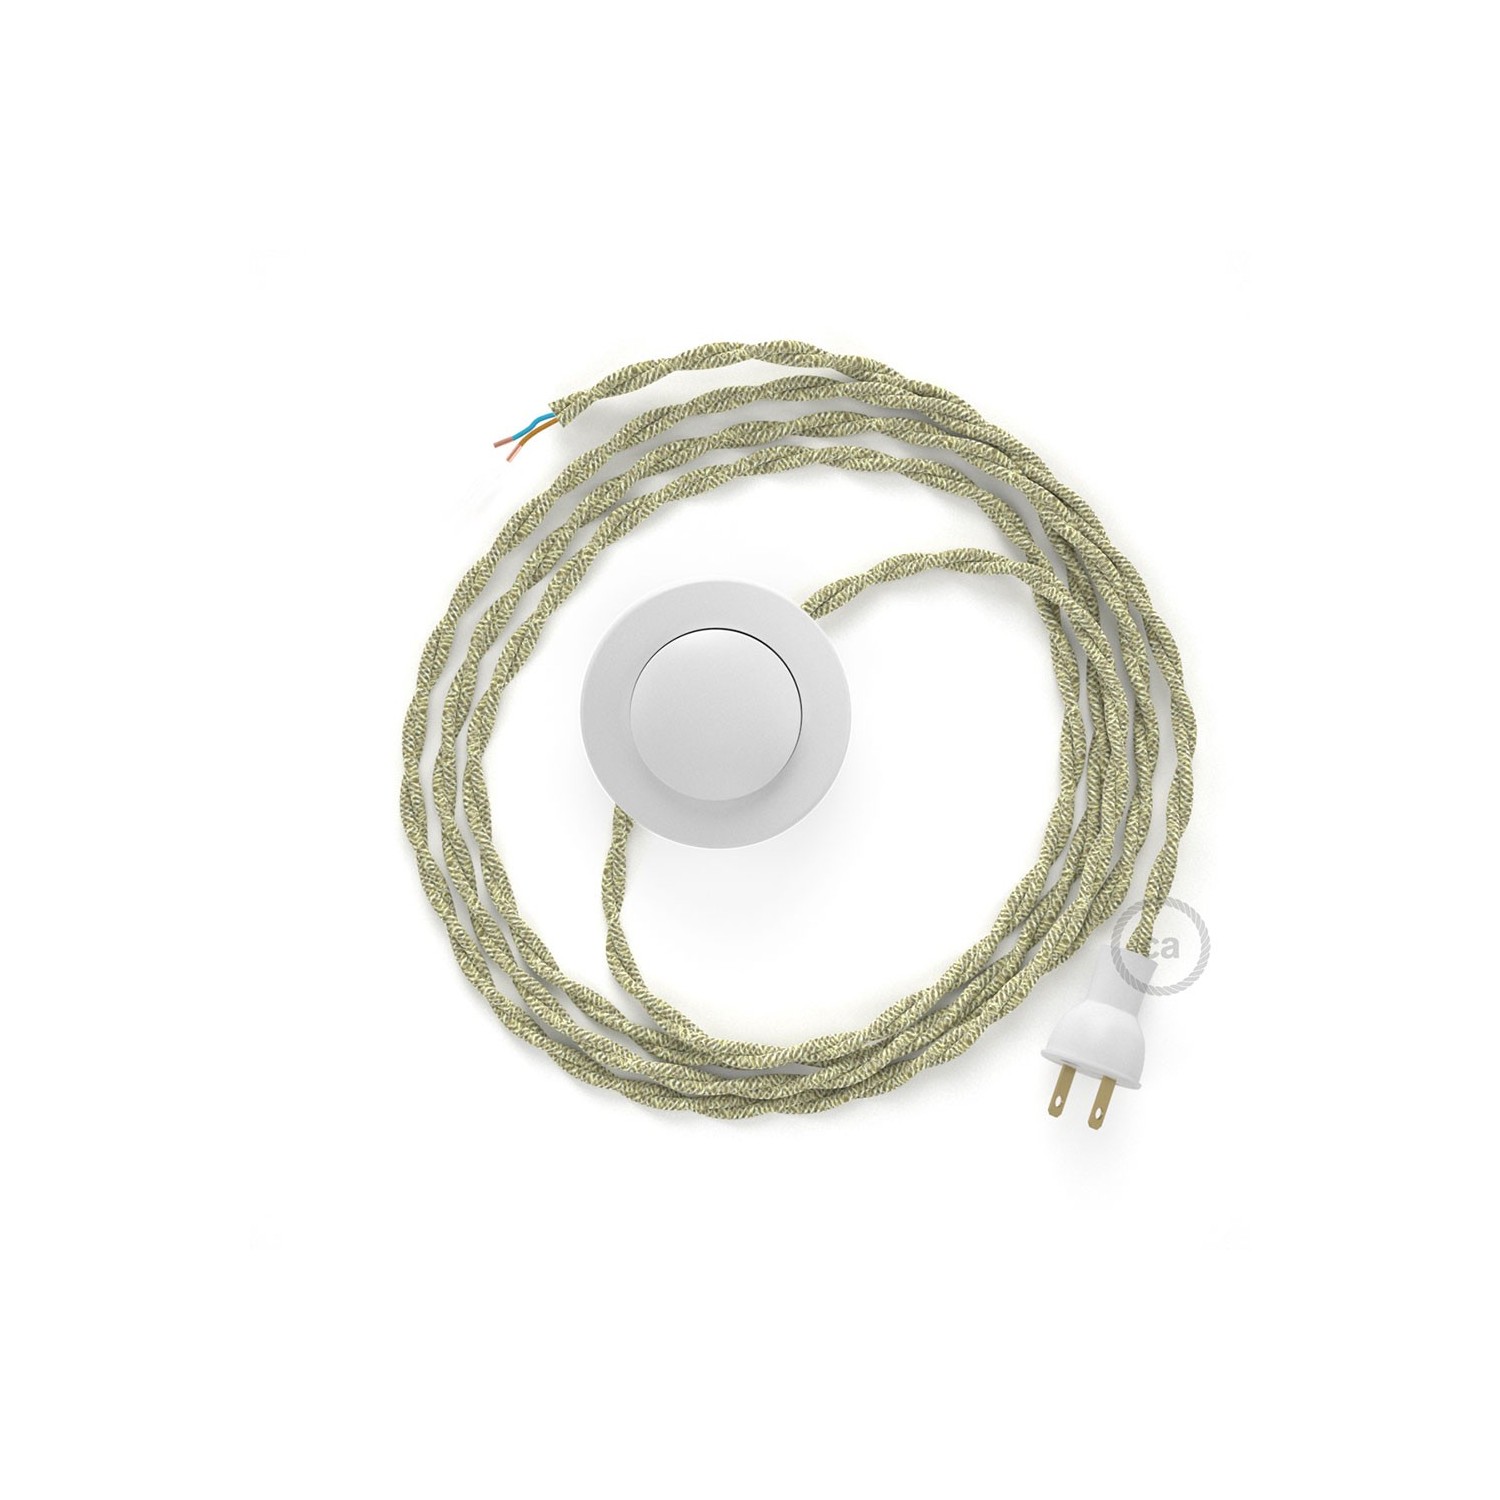 Cableado para lámpara de piso, cable TN01 Lino Natural Neutro 3 m. Elige tu el color de la clavija y del interruptor!